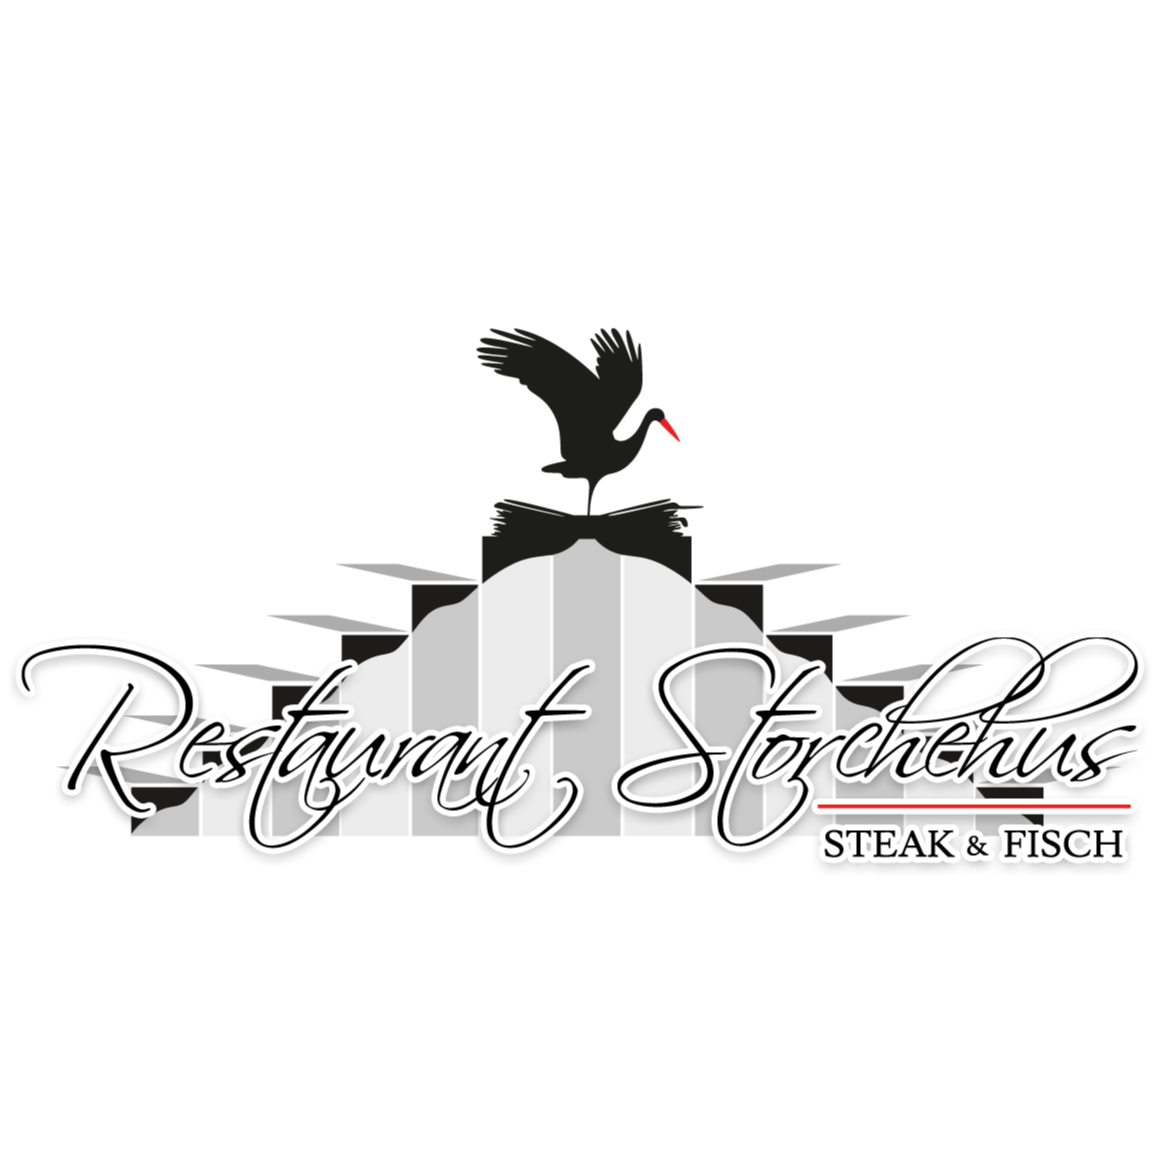 Logo von Restaurant Storchehus